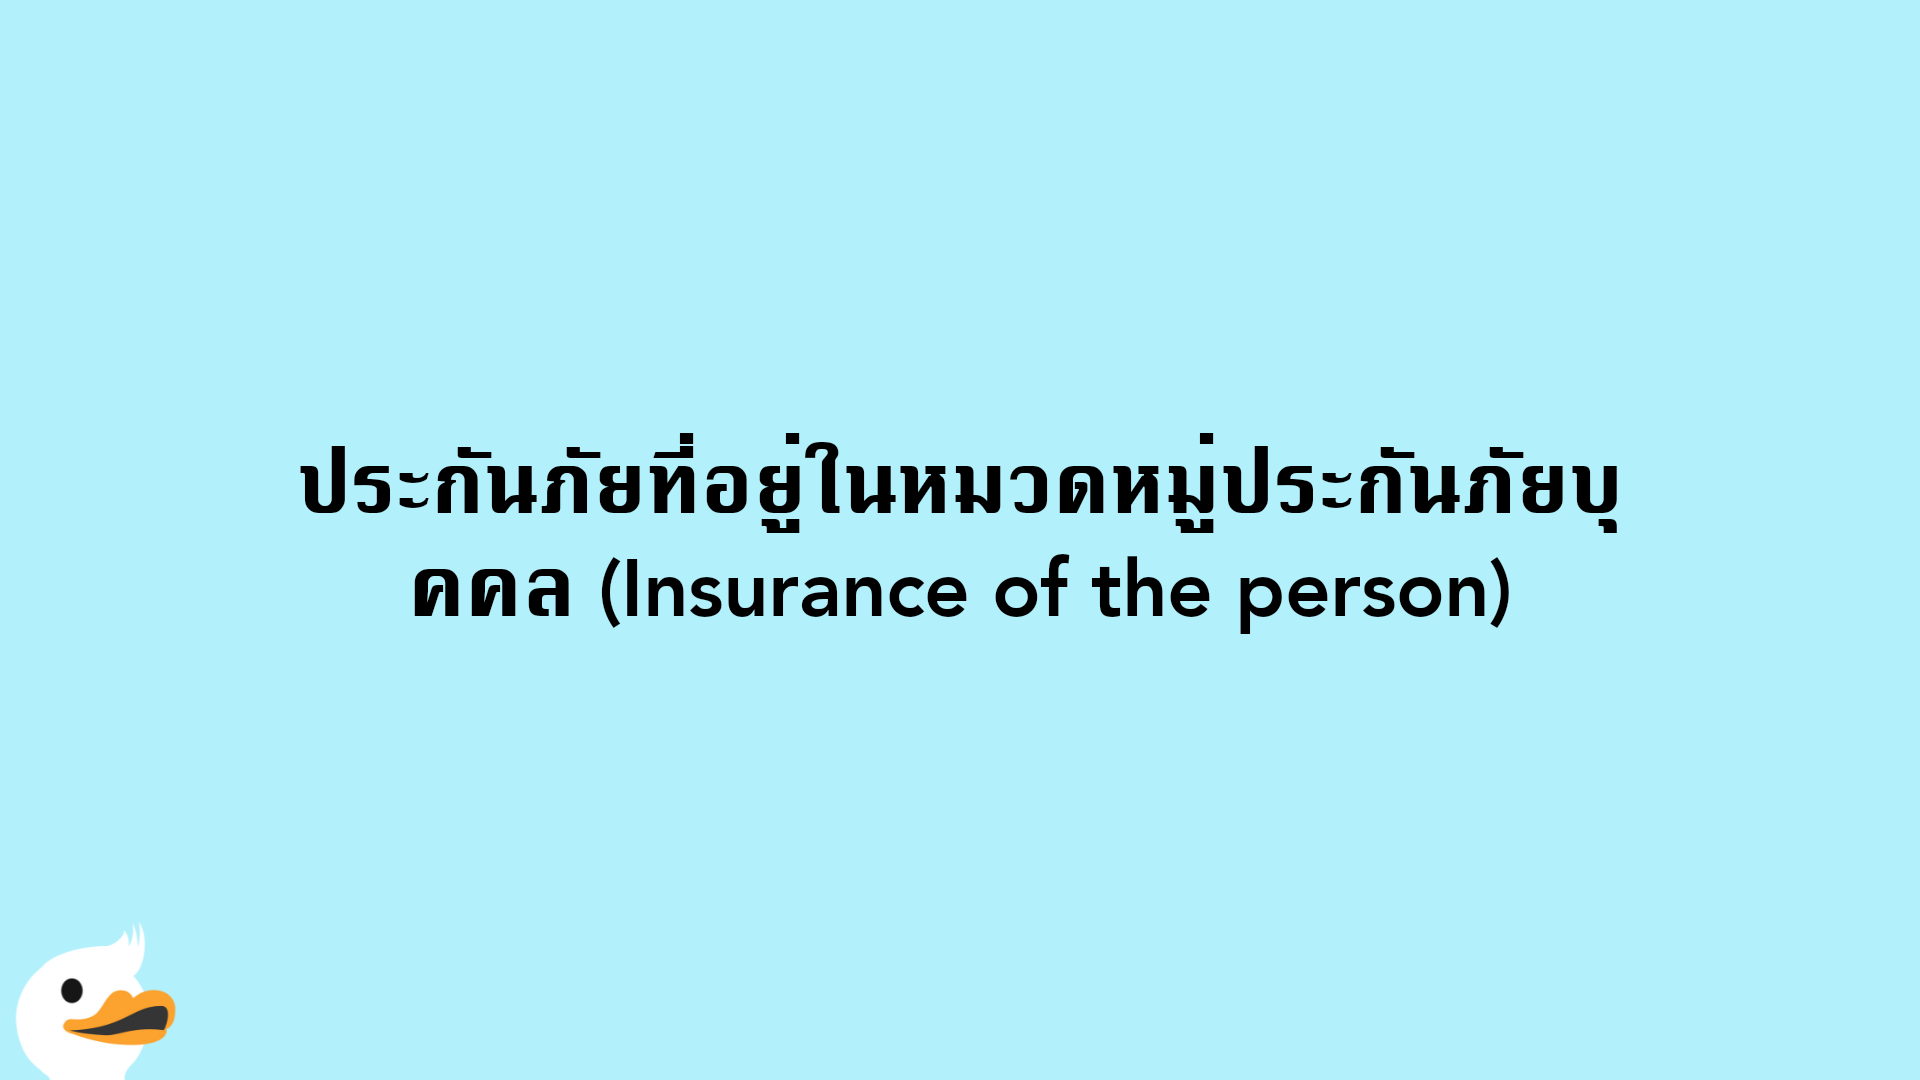 ประกันภัยที่อยู่ในหมวดหมู่ประกันภัยบุคคล (Insurance of the person)